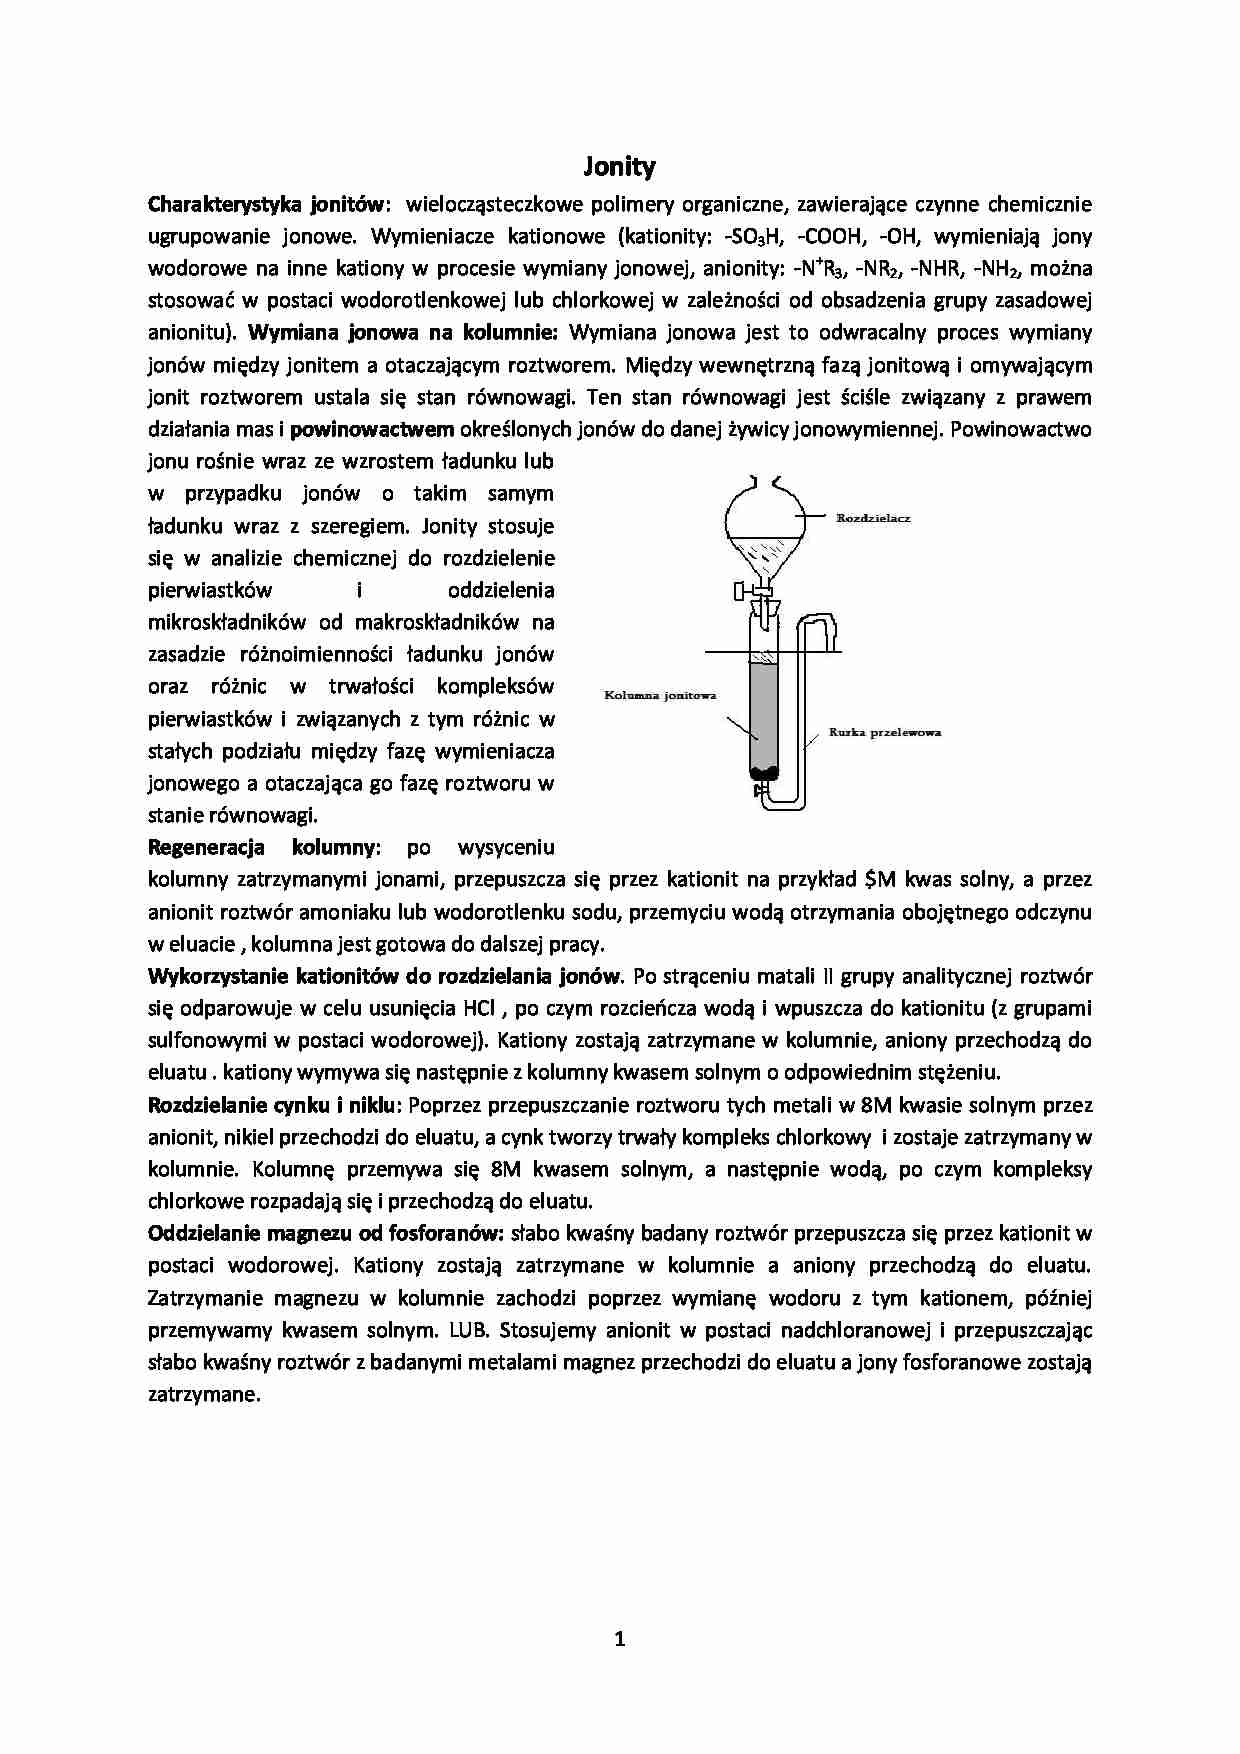 Chemia Analityczna - wykład - Charakterystyka jonitów - strona 1